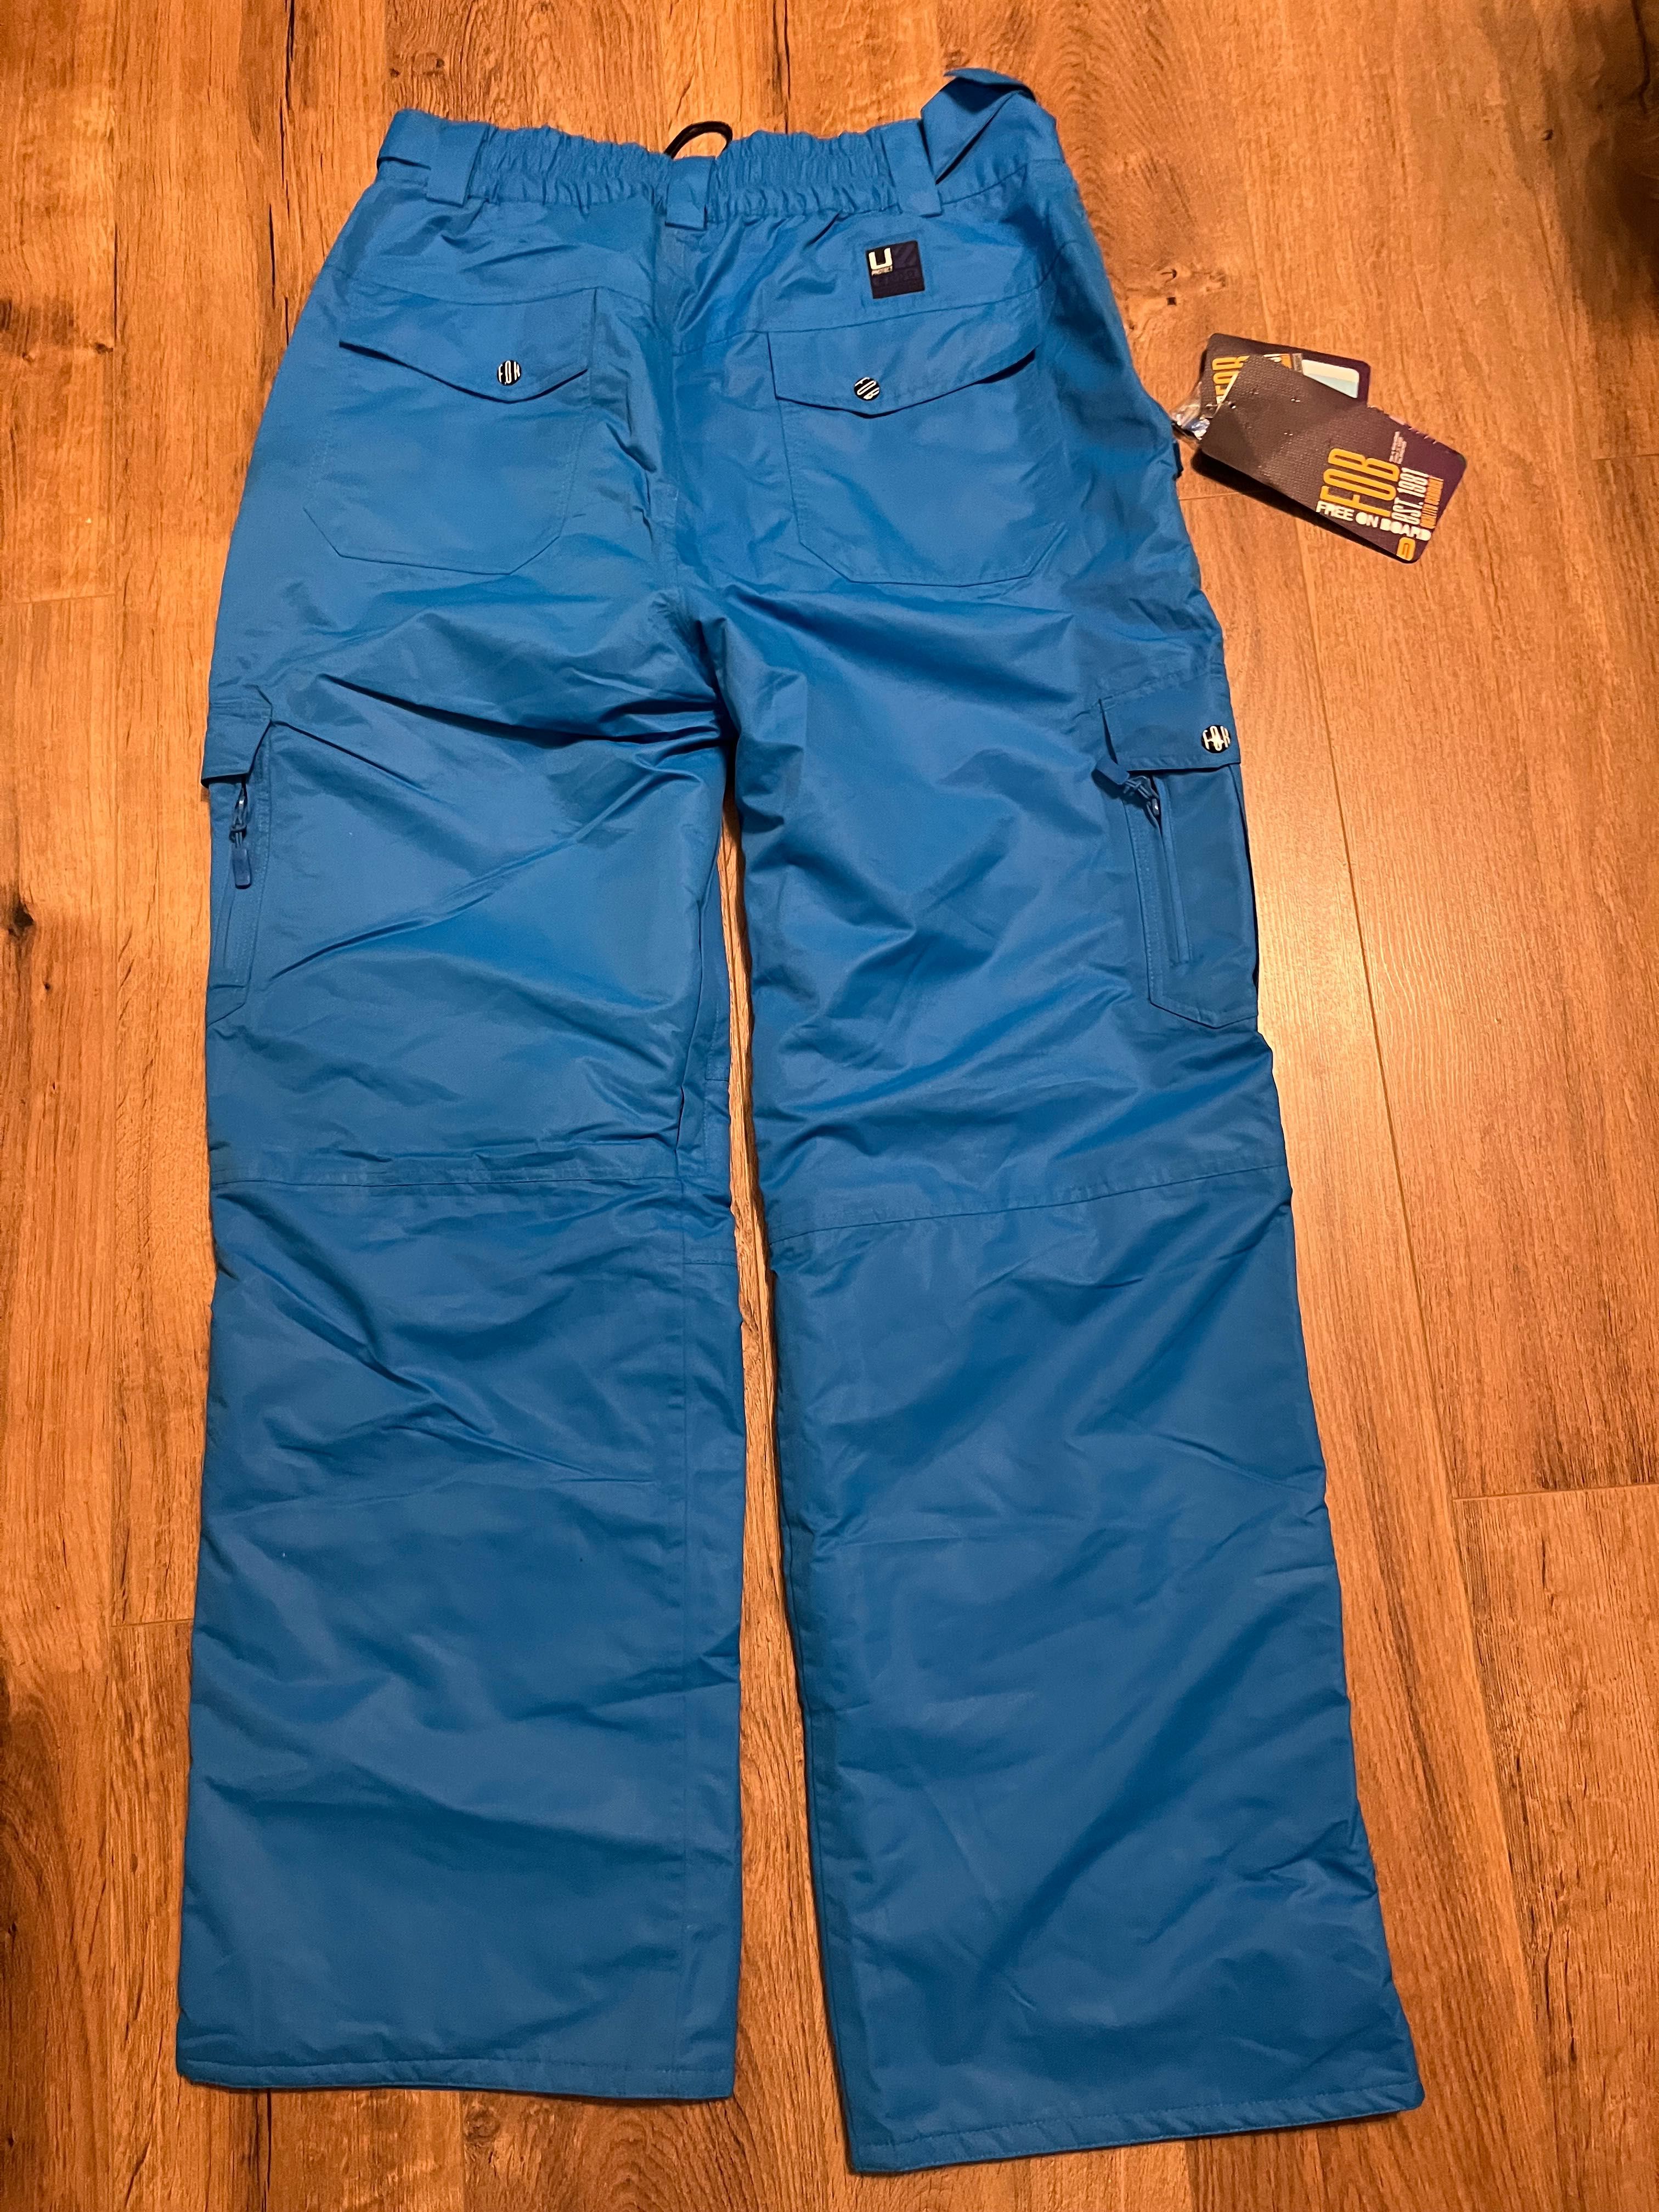 Spodnie narciarskie FOB-4F, XXL